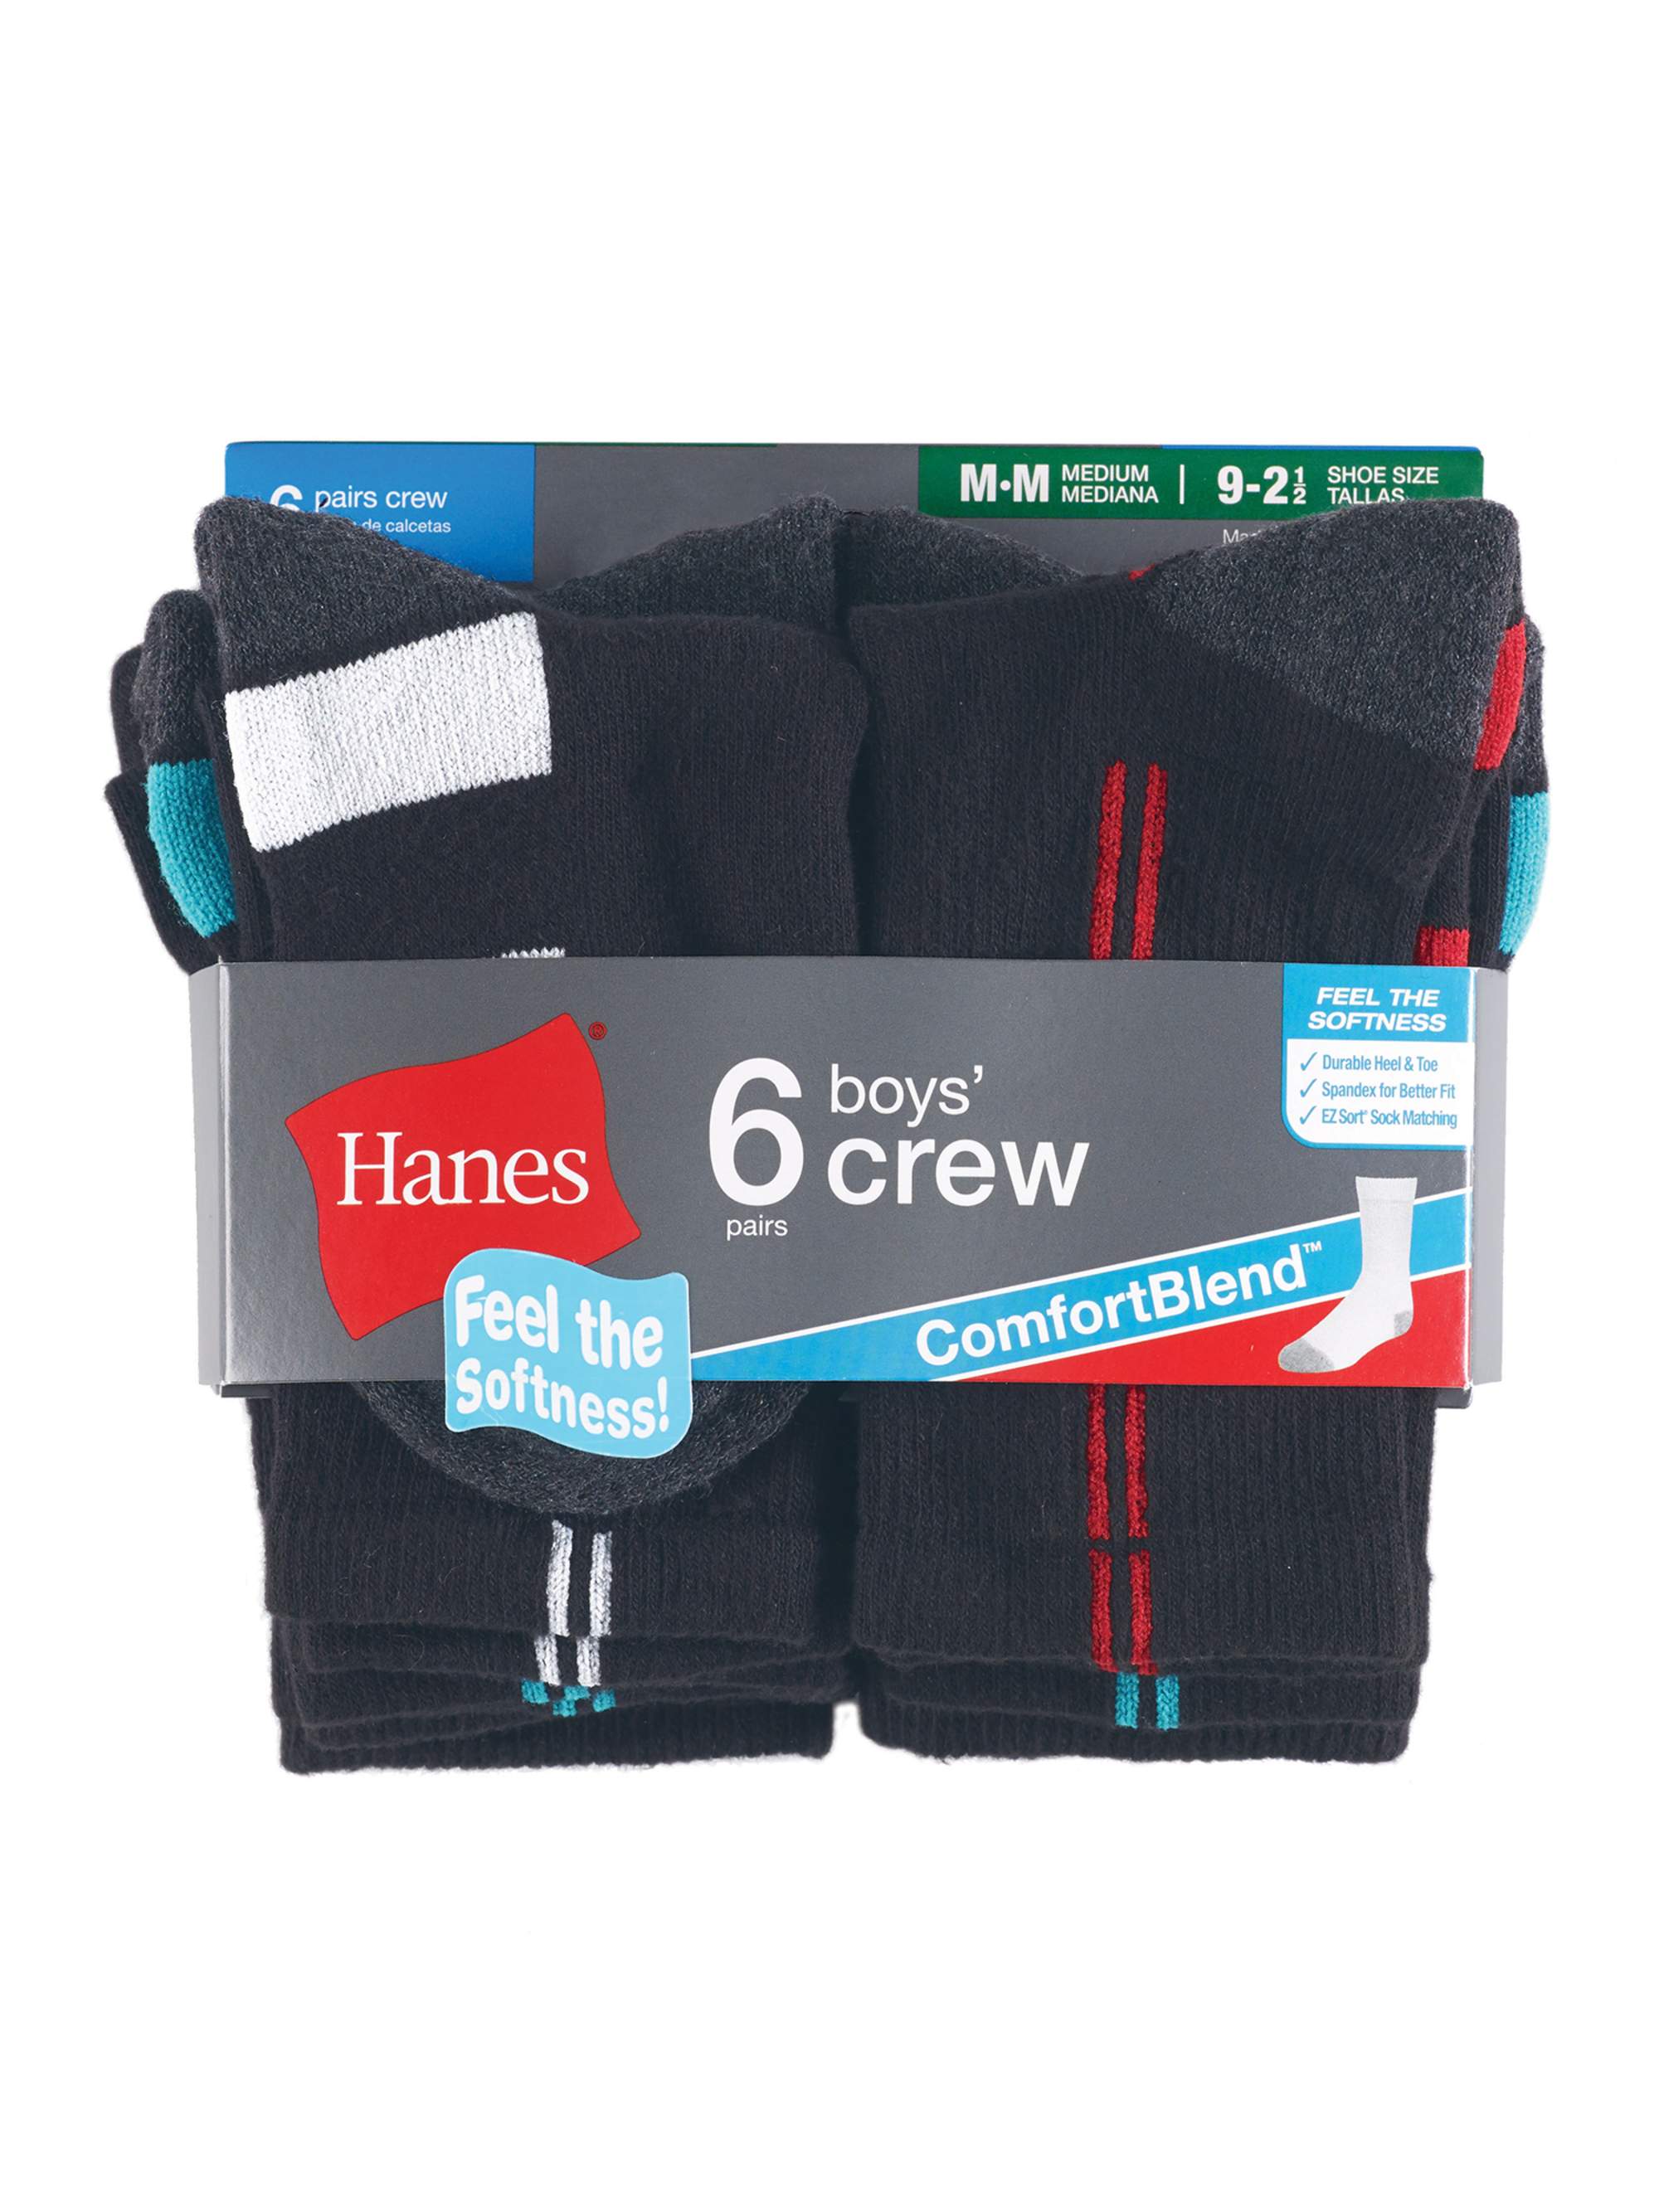 Hanes Boys Socks, 6 Pack Crew Socks Sizes S - L - image 1 of 4